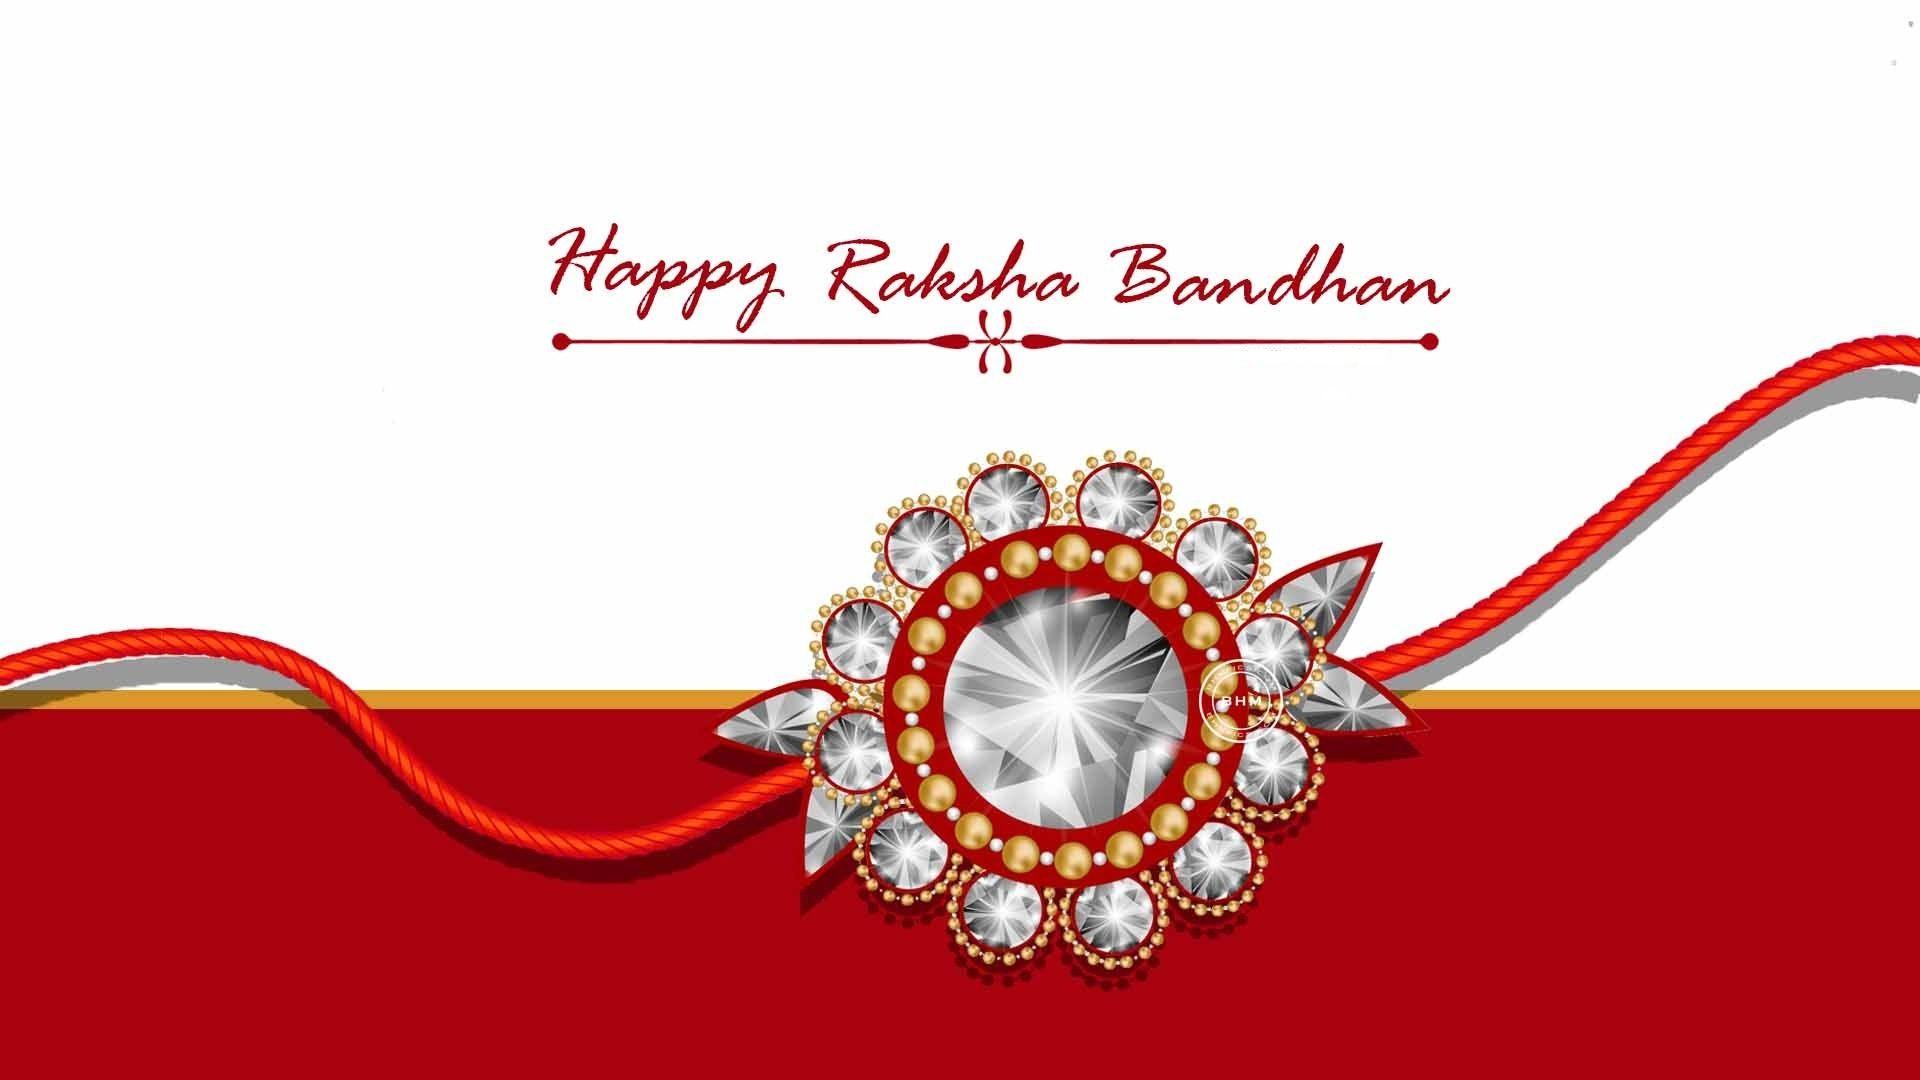 HD Wallpaper Download - Happy Raksha Bandhan Wallpaper in HD 1080p  #RakshaBandhan #Rakhi #RakshaBandhan2020 #Rakshabandan #RakshakBandhan  #rakshabandhanspecial #HappyRakshaBandhan #HappyRakshaBandhan2020  #RakhiBandhan2020 #RakhiDesign #DIYRakhis http ...